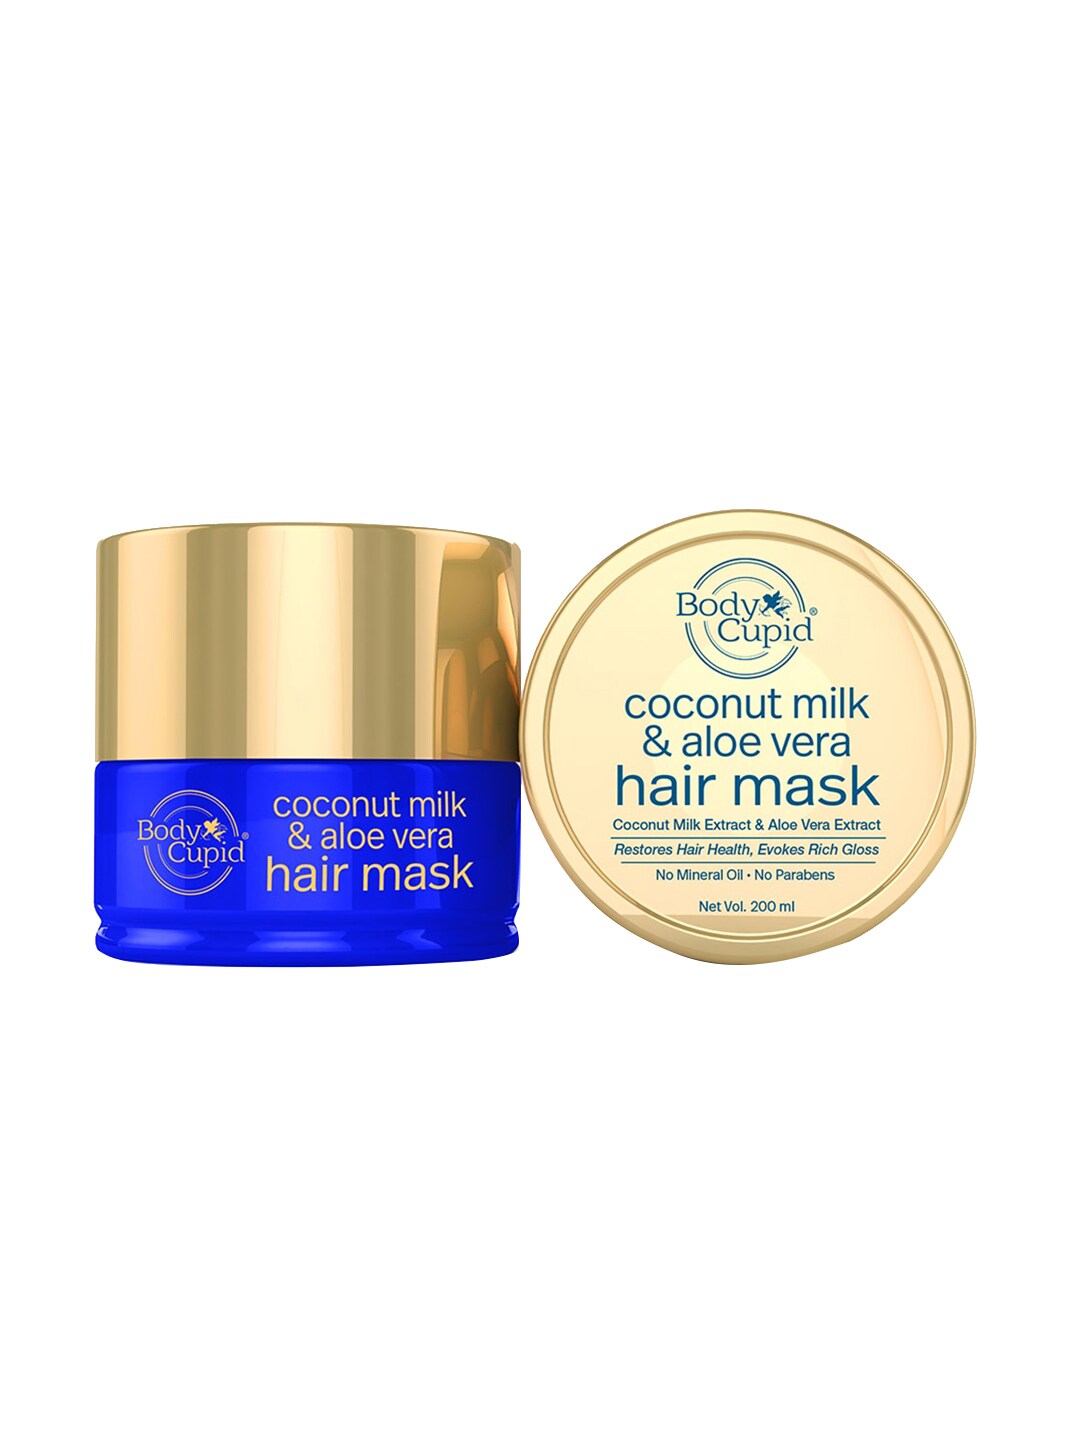 Body Cupid Coconut Milk & Aloe Vera Hair Mask - 200 ml Price in India